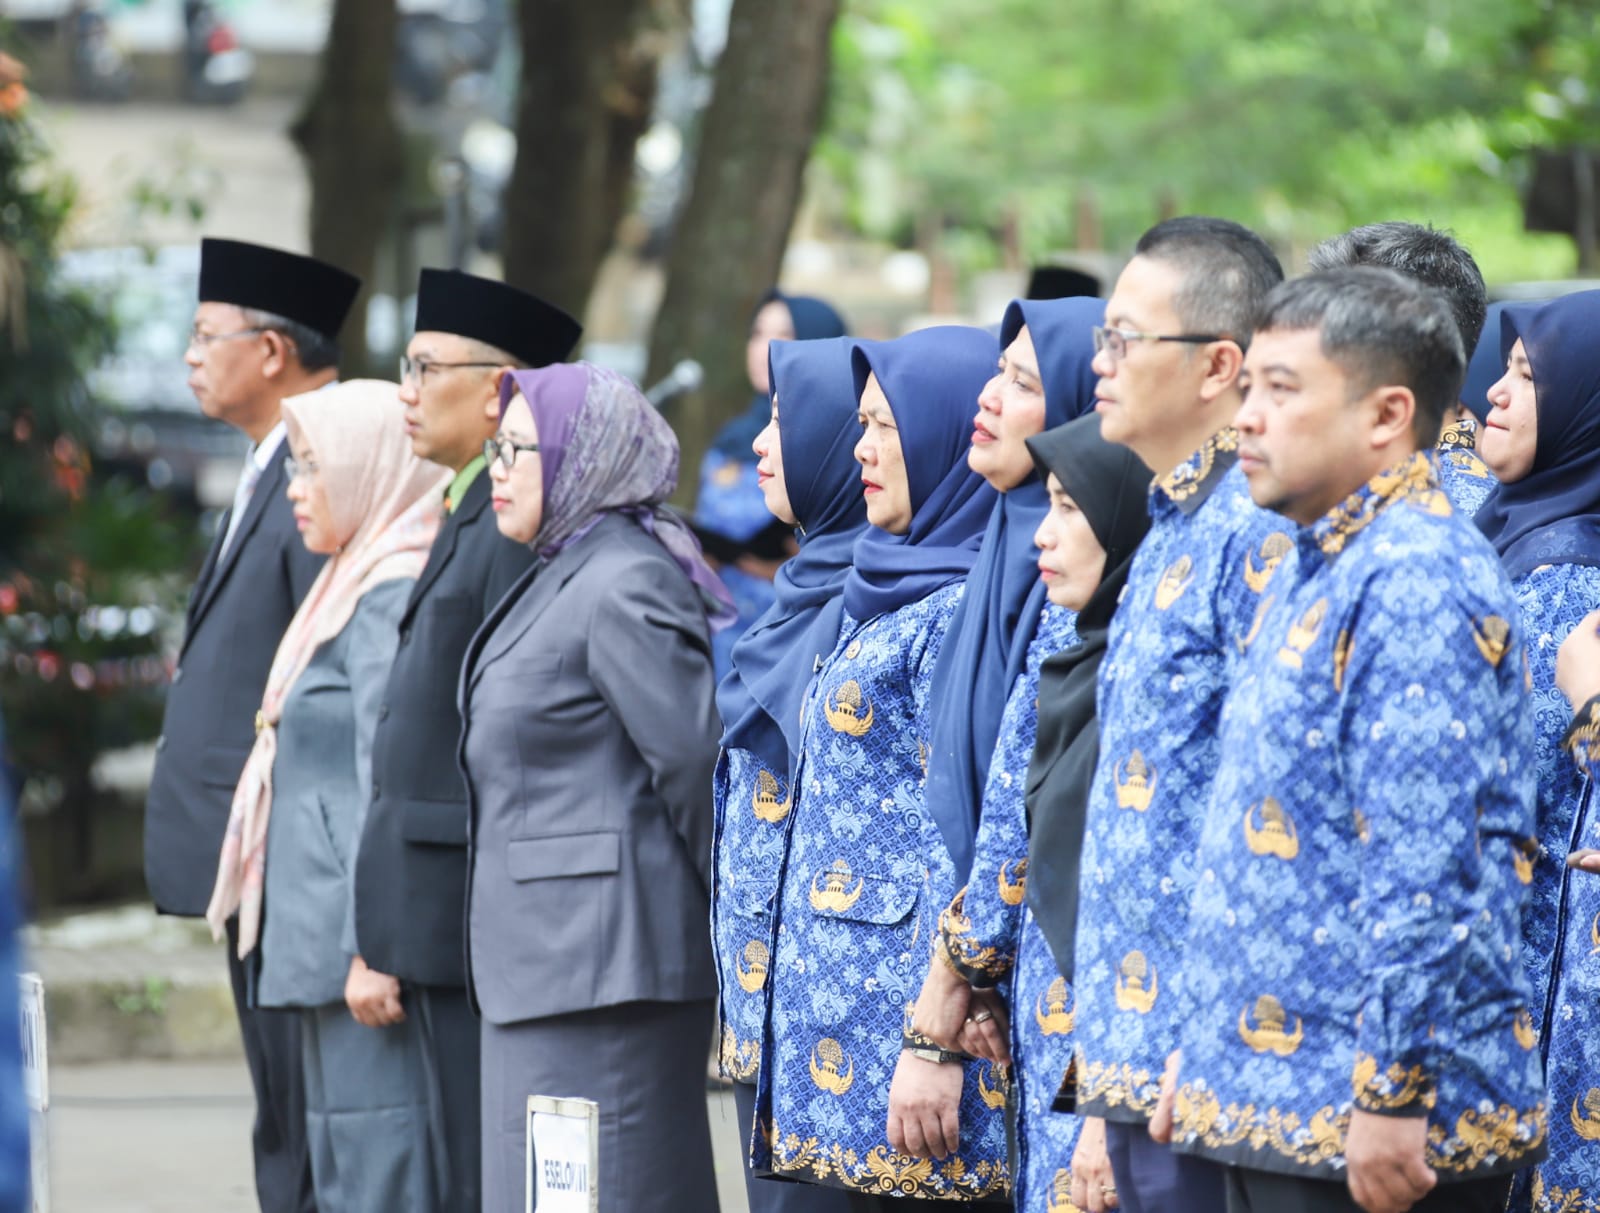 Peringatan Hari Kebangkitan Nasional Tingkat Kota Cimahi: Momentum Wujudkan Indonesia Emas 2045